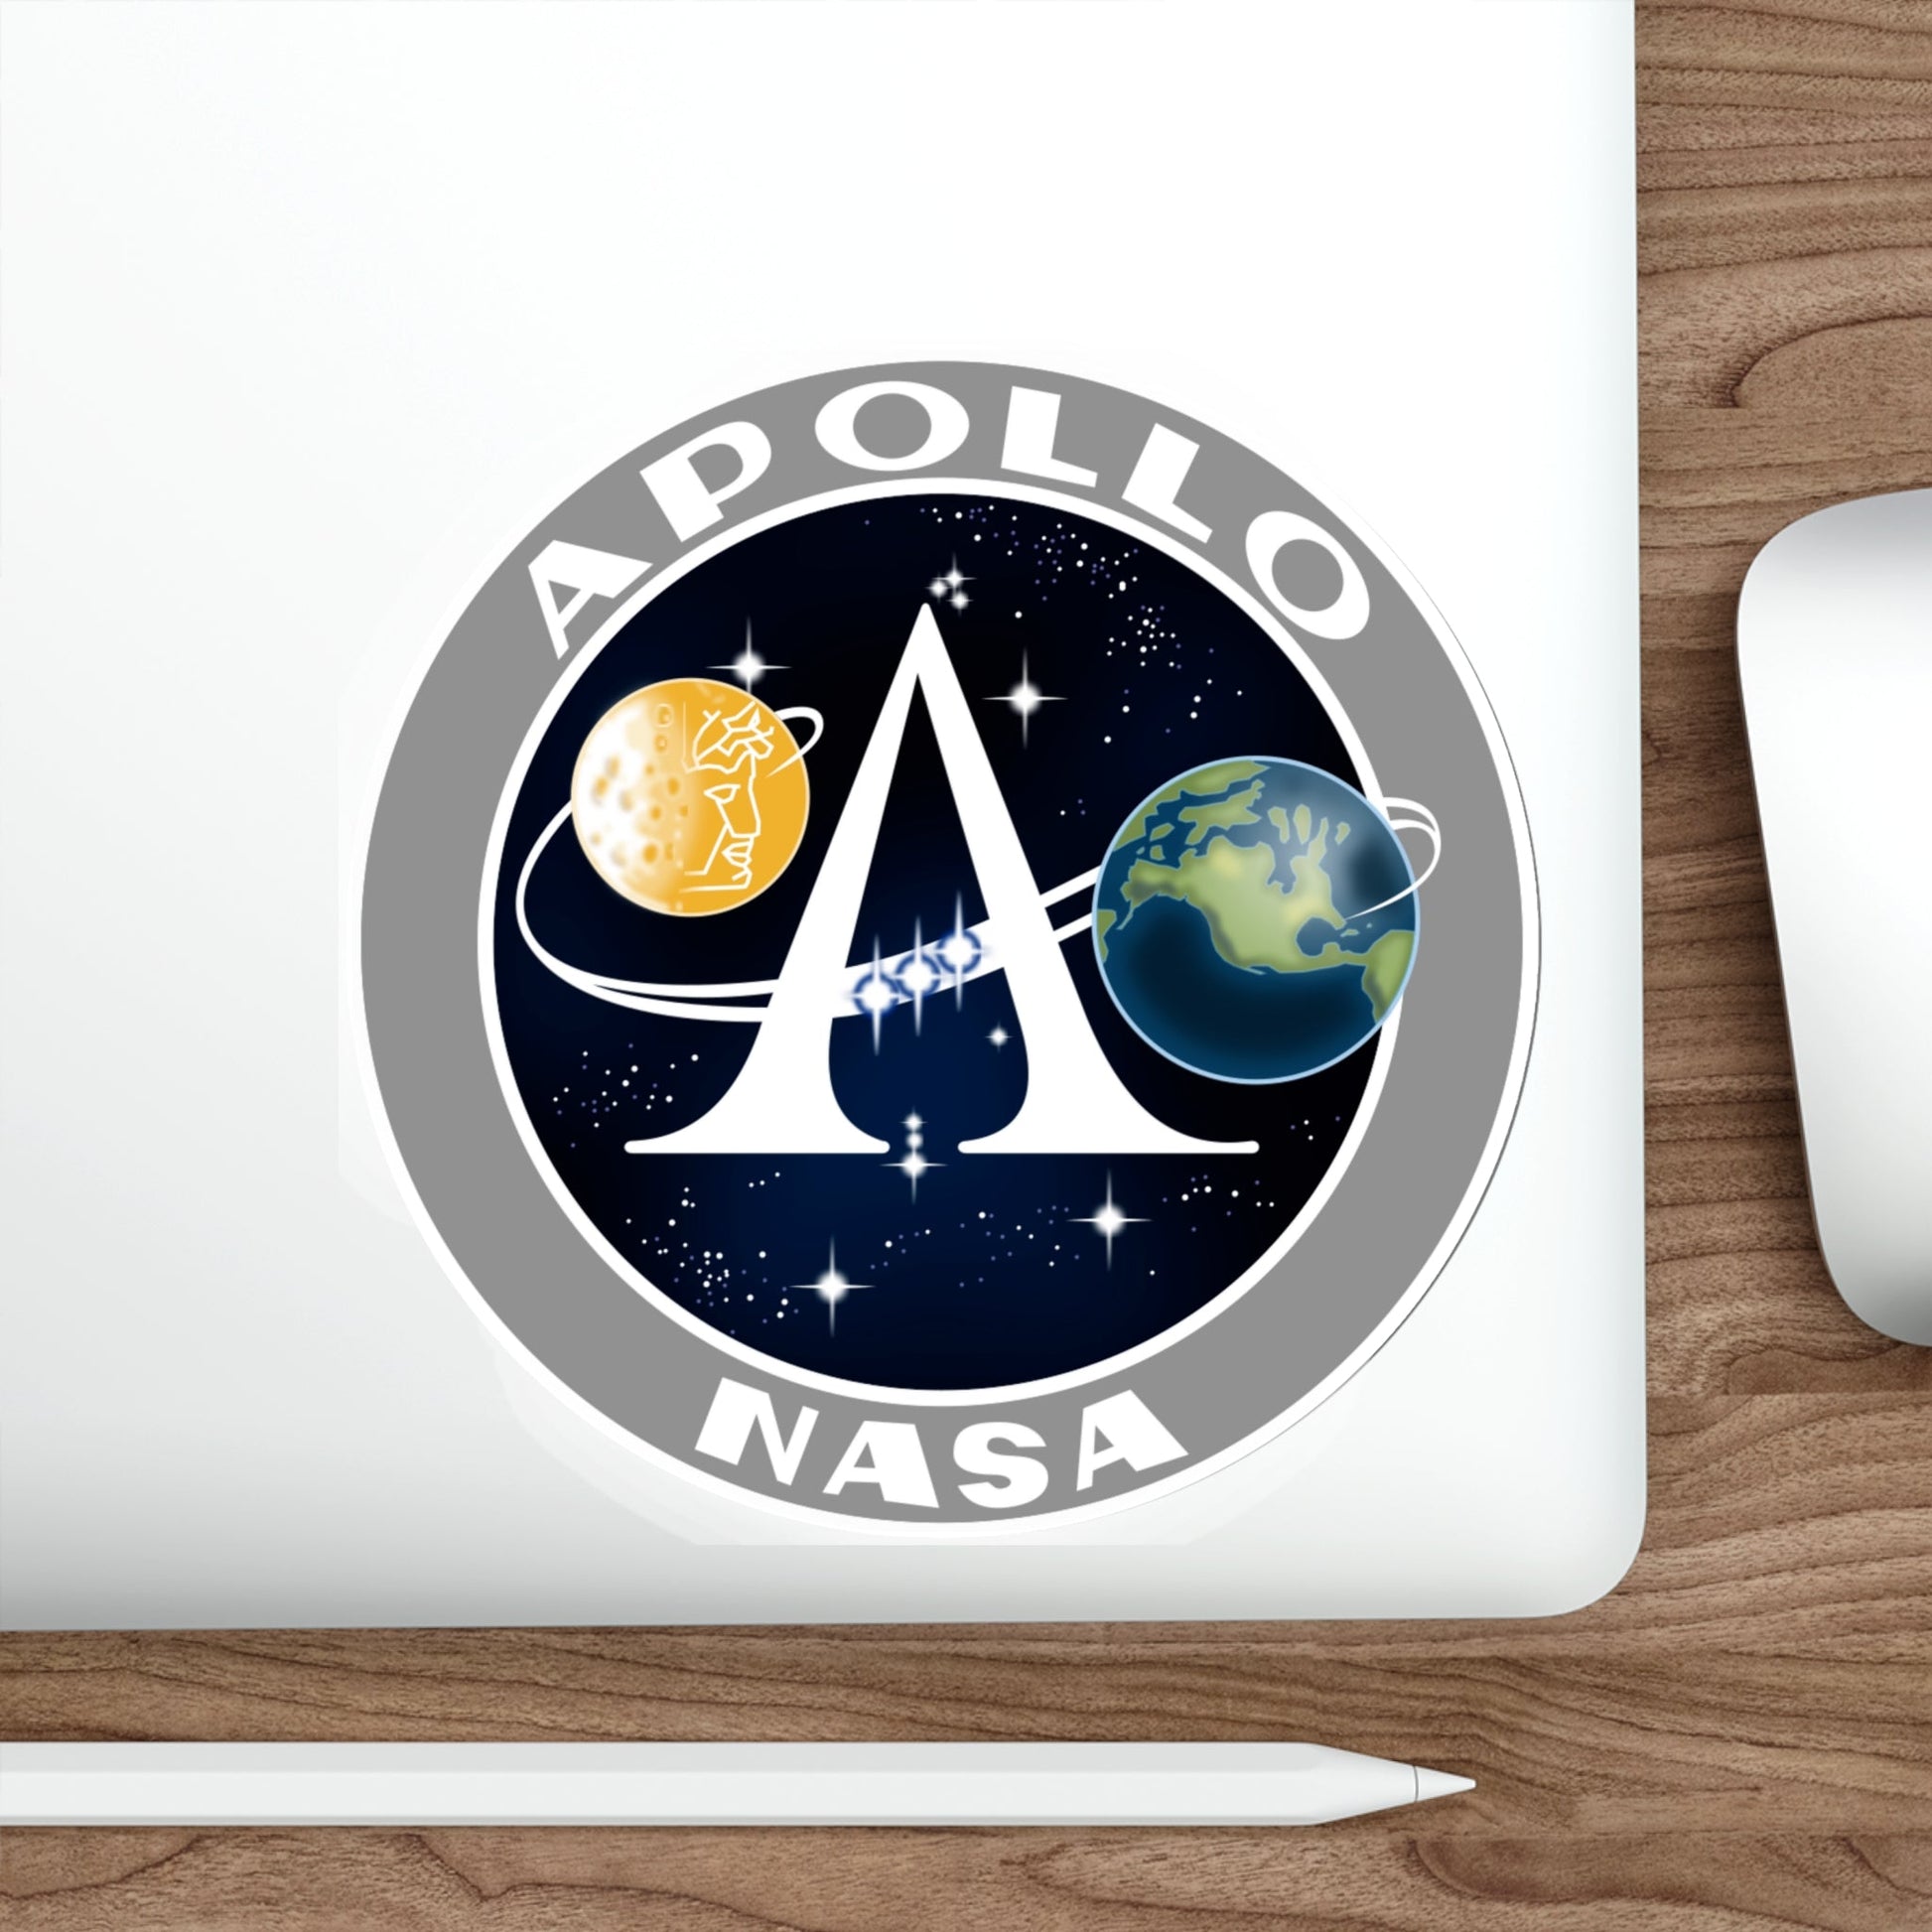 Apollo Program (NASA) STICKER Vinyl Die-Cut Decal – The Sticker Space